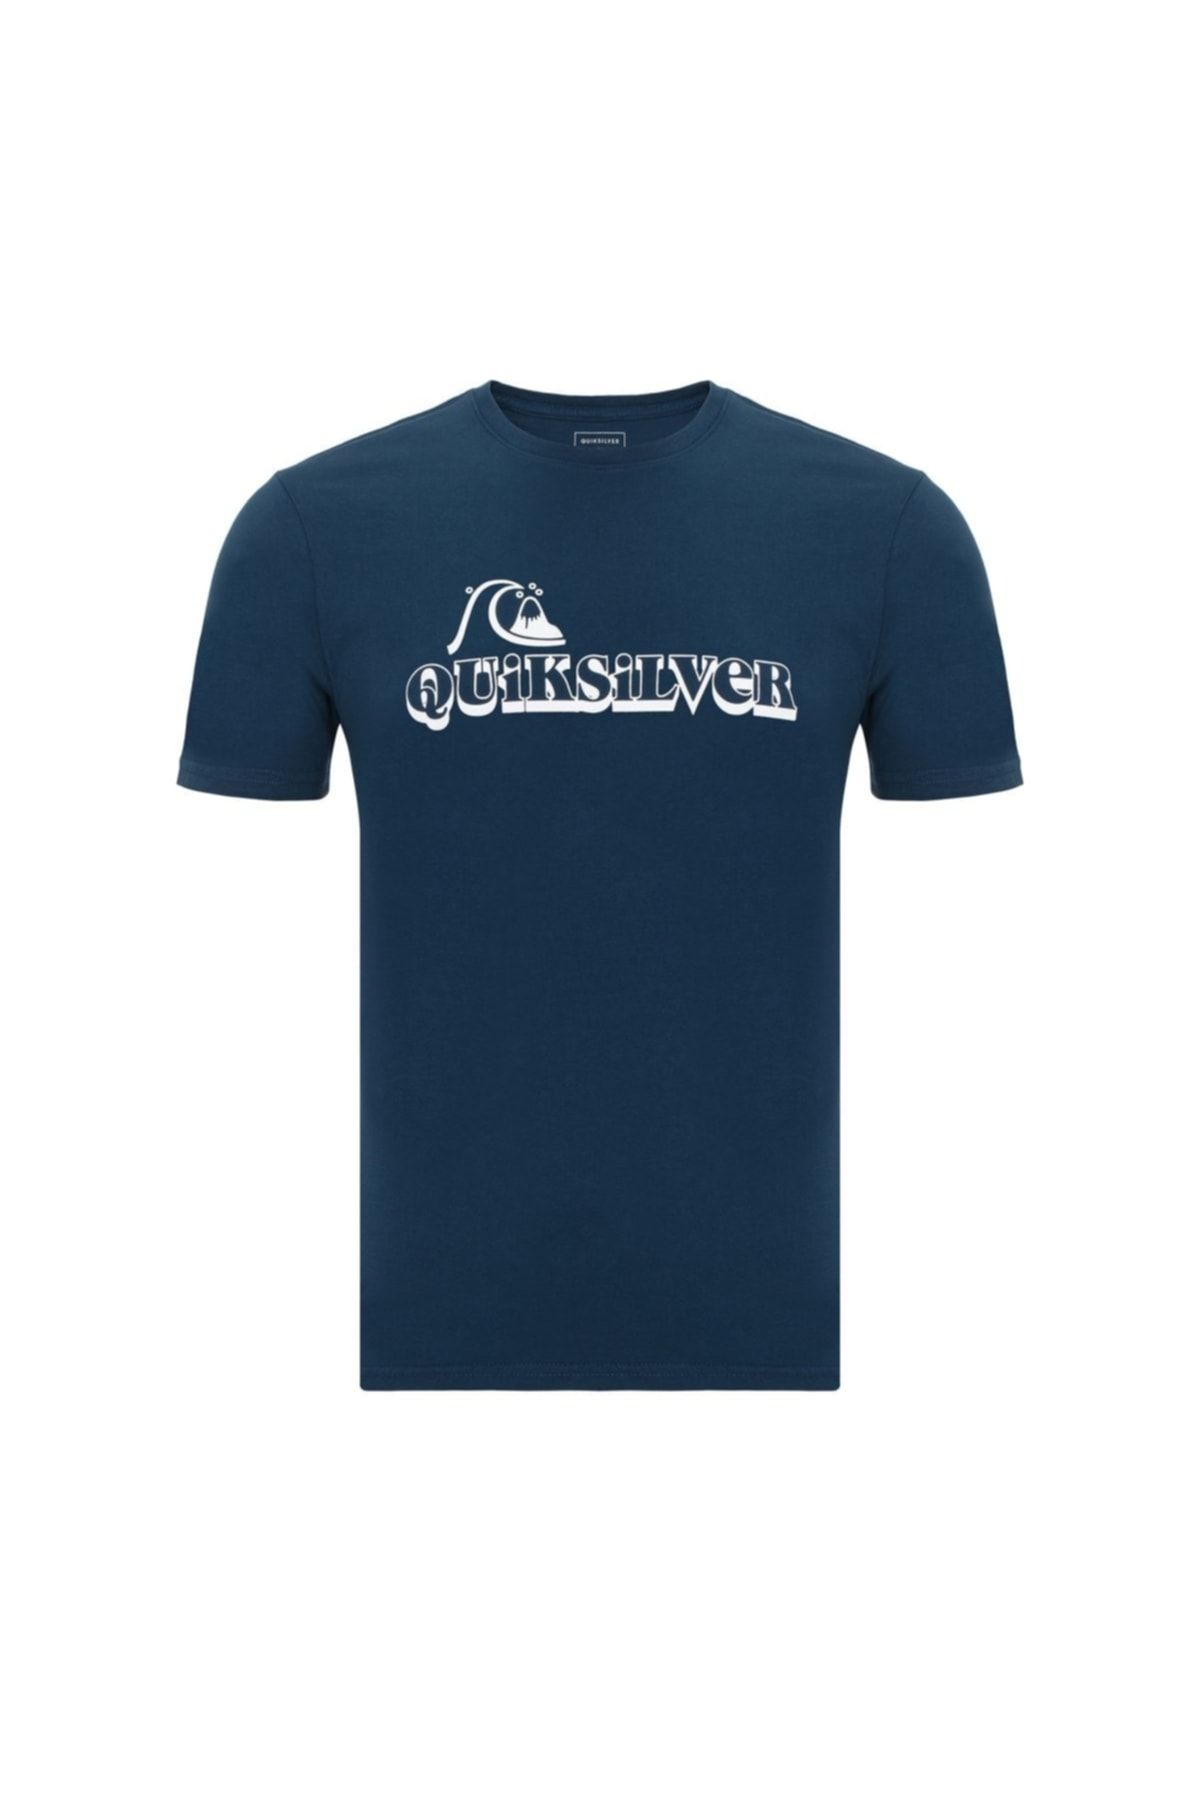 Quiksilver Lostsparksss Erkek T-shirt